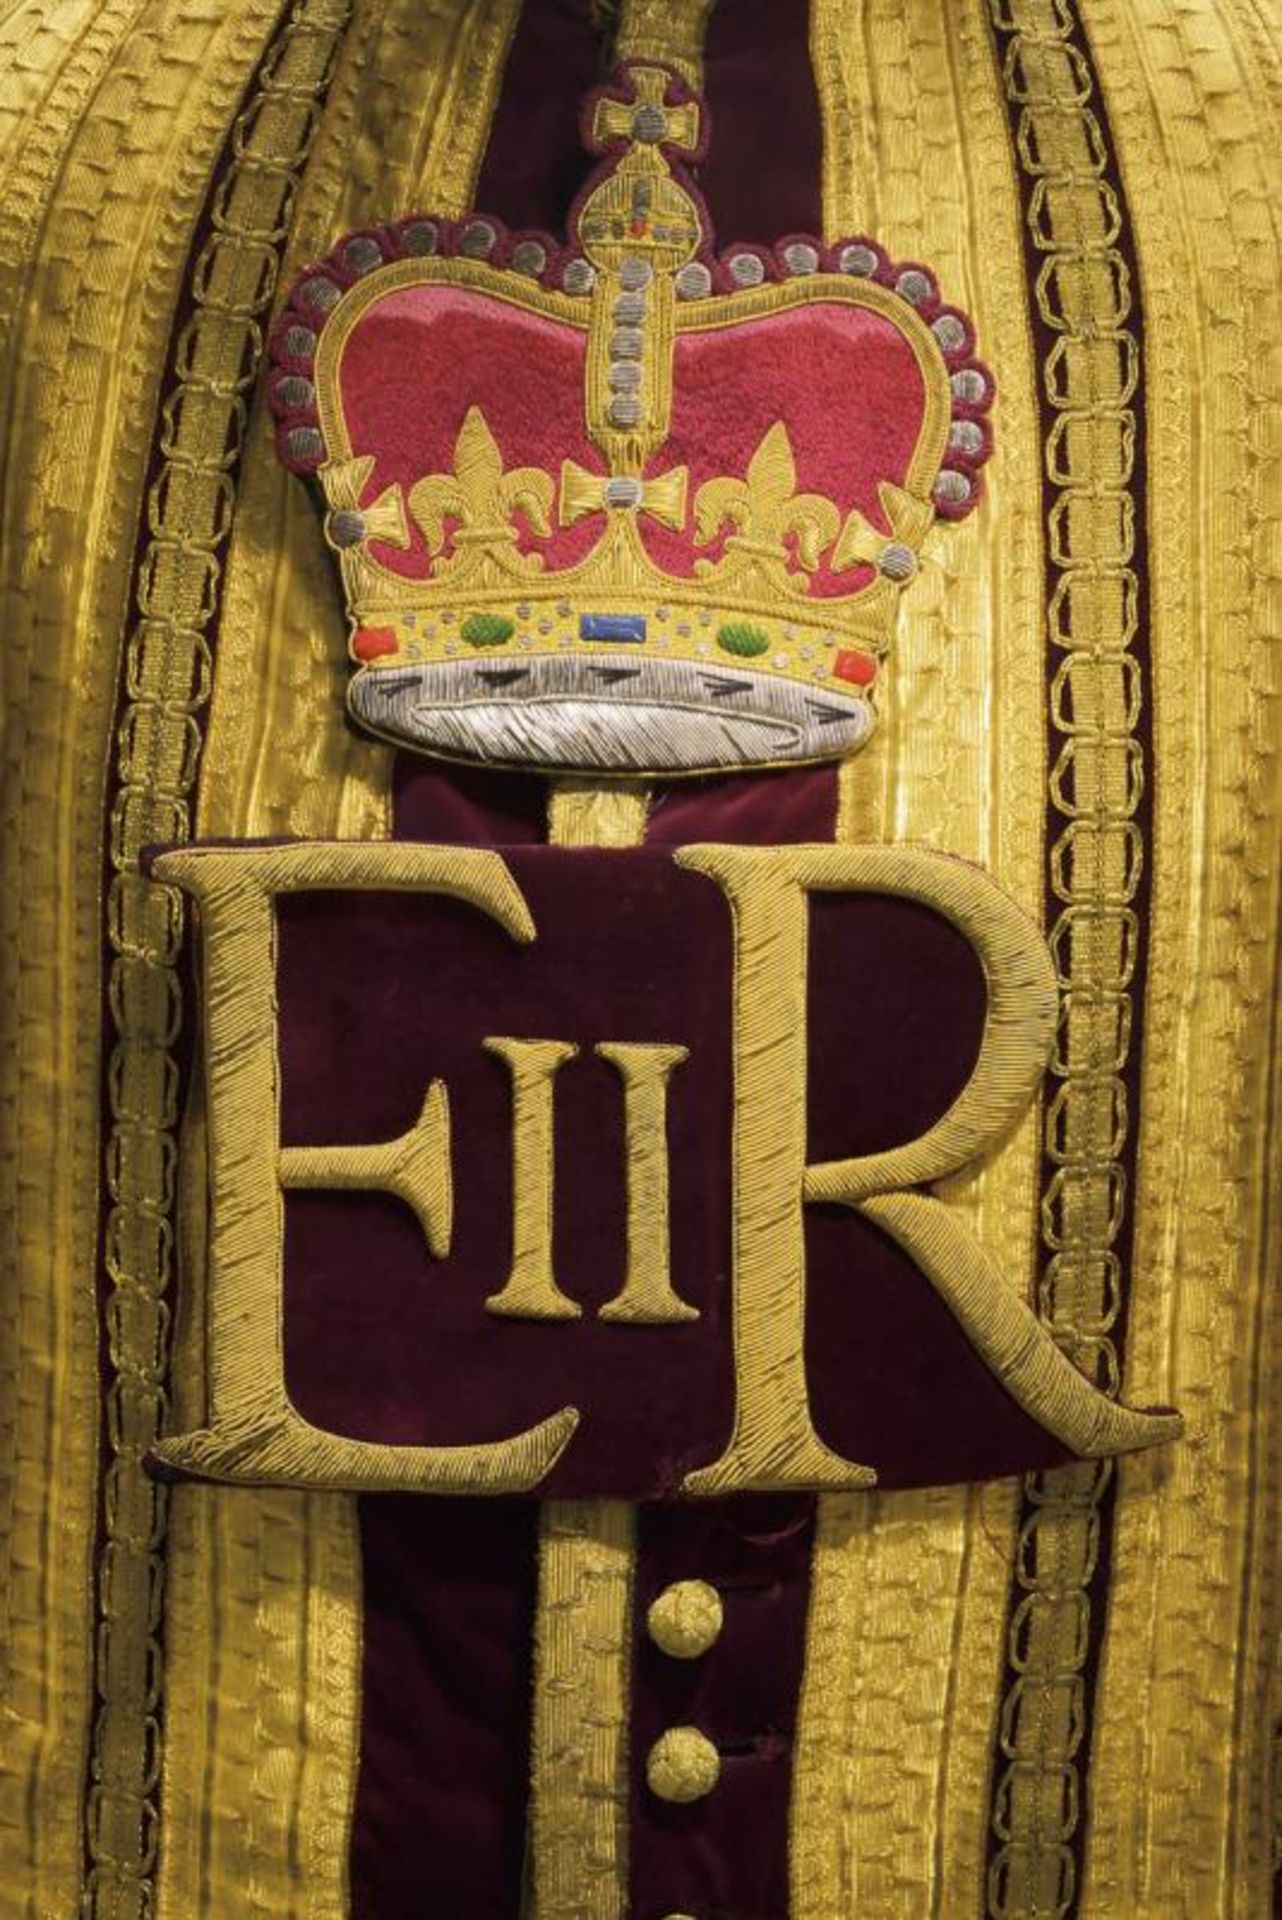 A drum major's uniform, epoch Queen Elisabeth II - Bild 3 aus 4